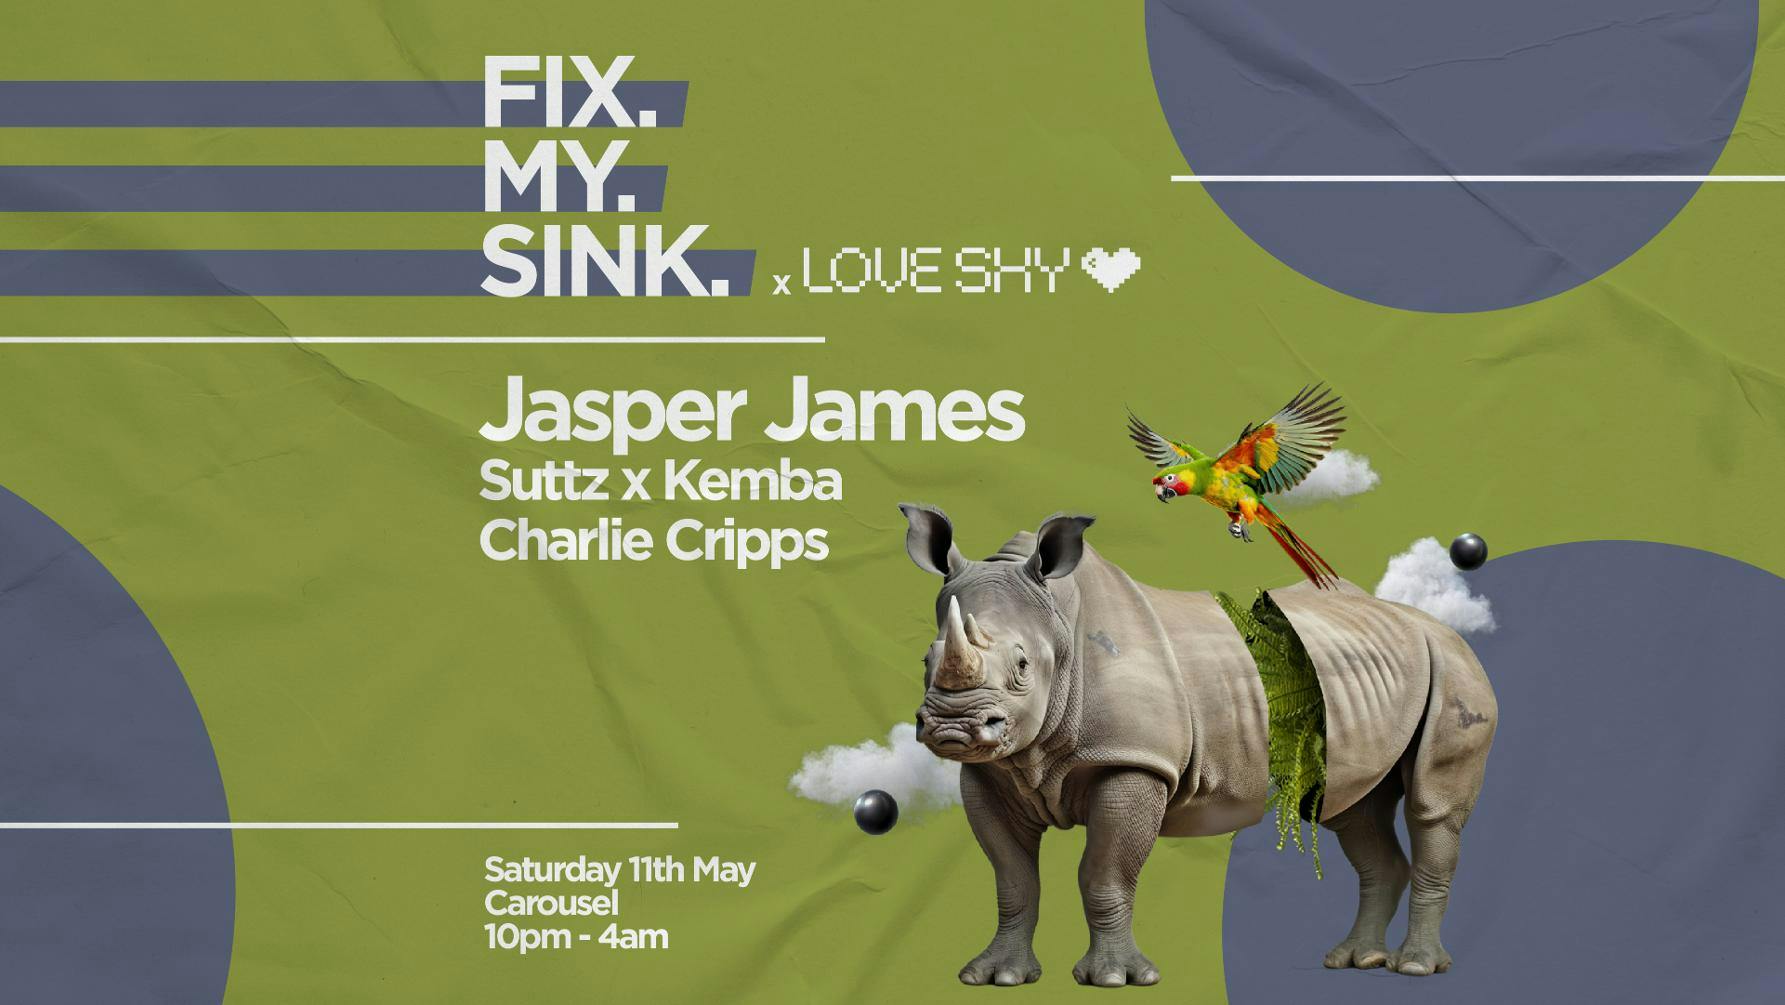 ╬ FIX MY SINK & Love Shy Art Club ╬ Jasper James ╬ Saturday May 11th ╬